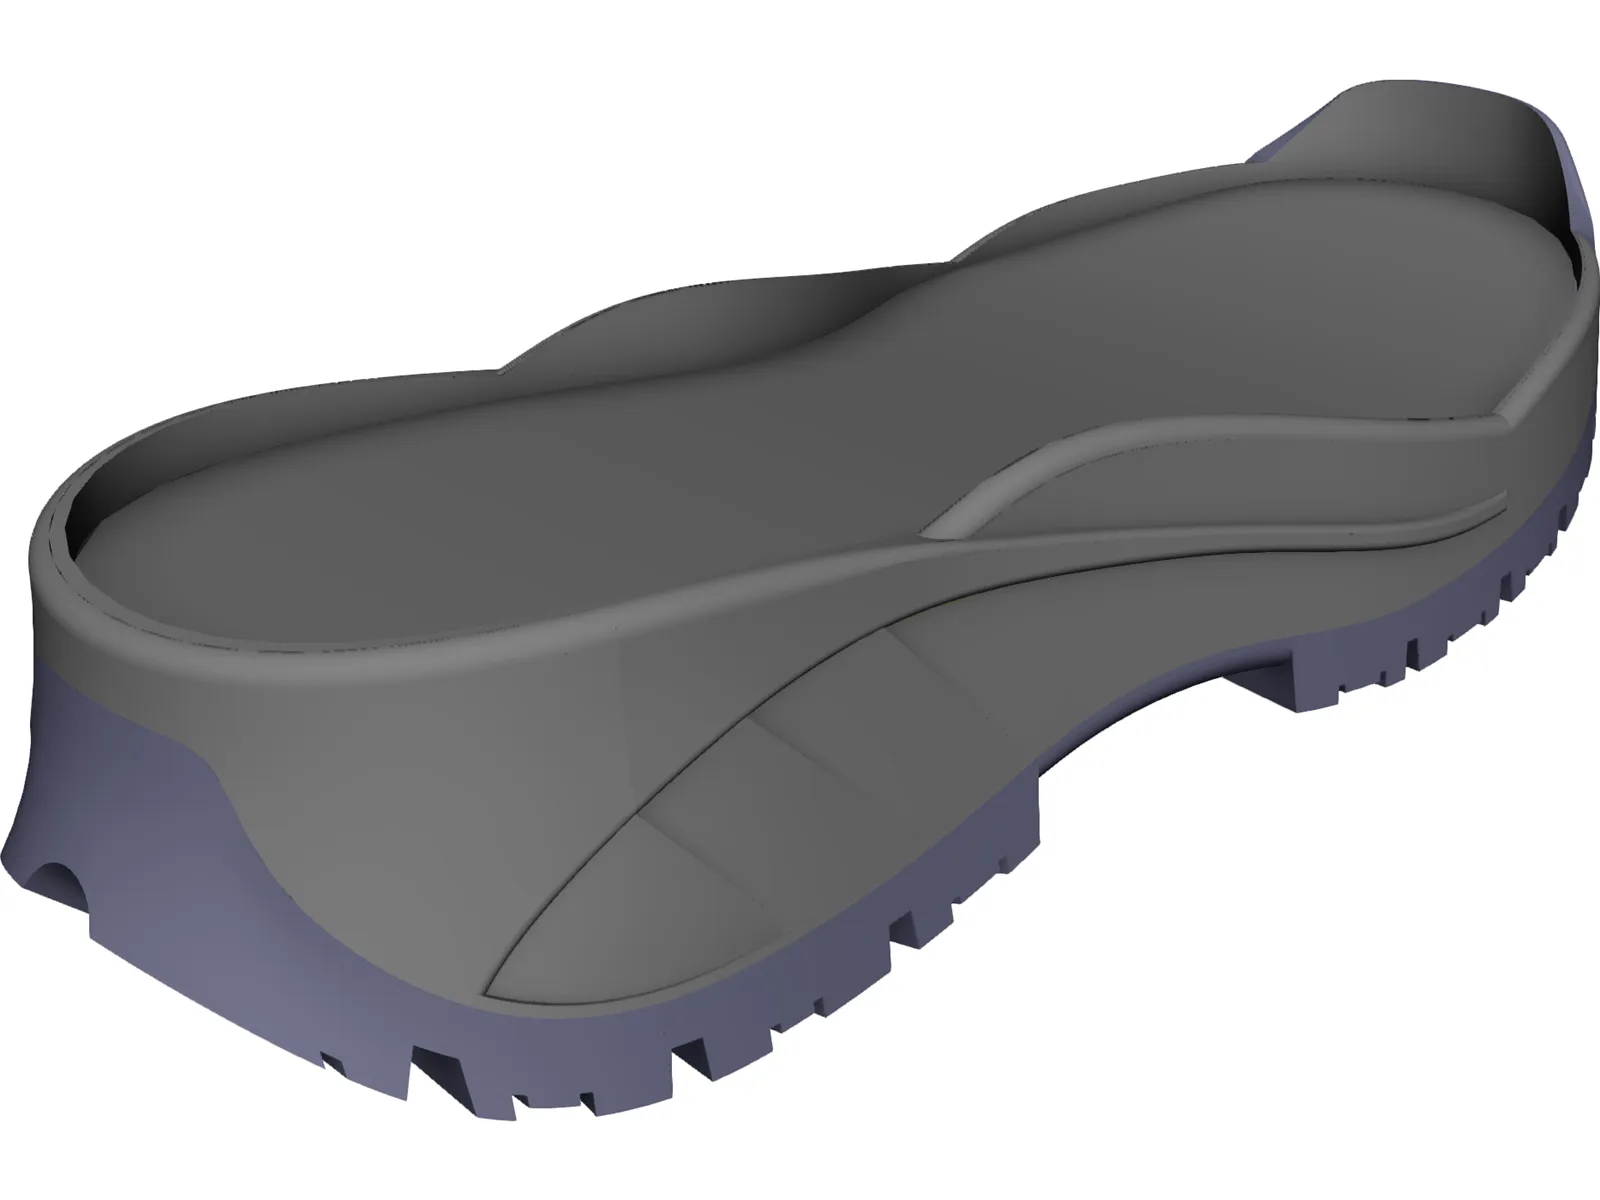 MPP Shoe Sole 3D Model